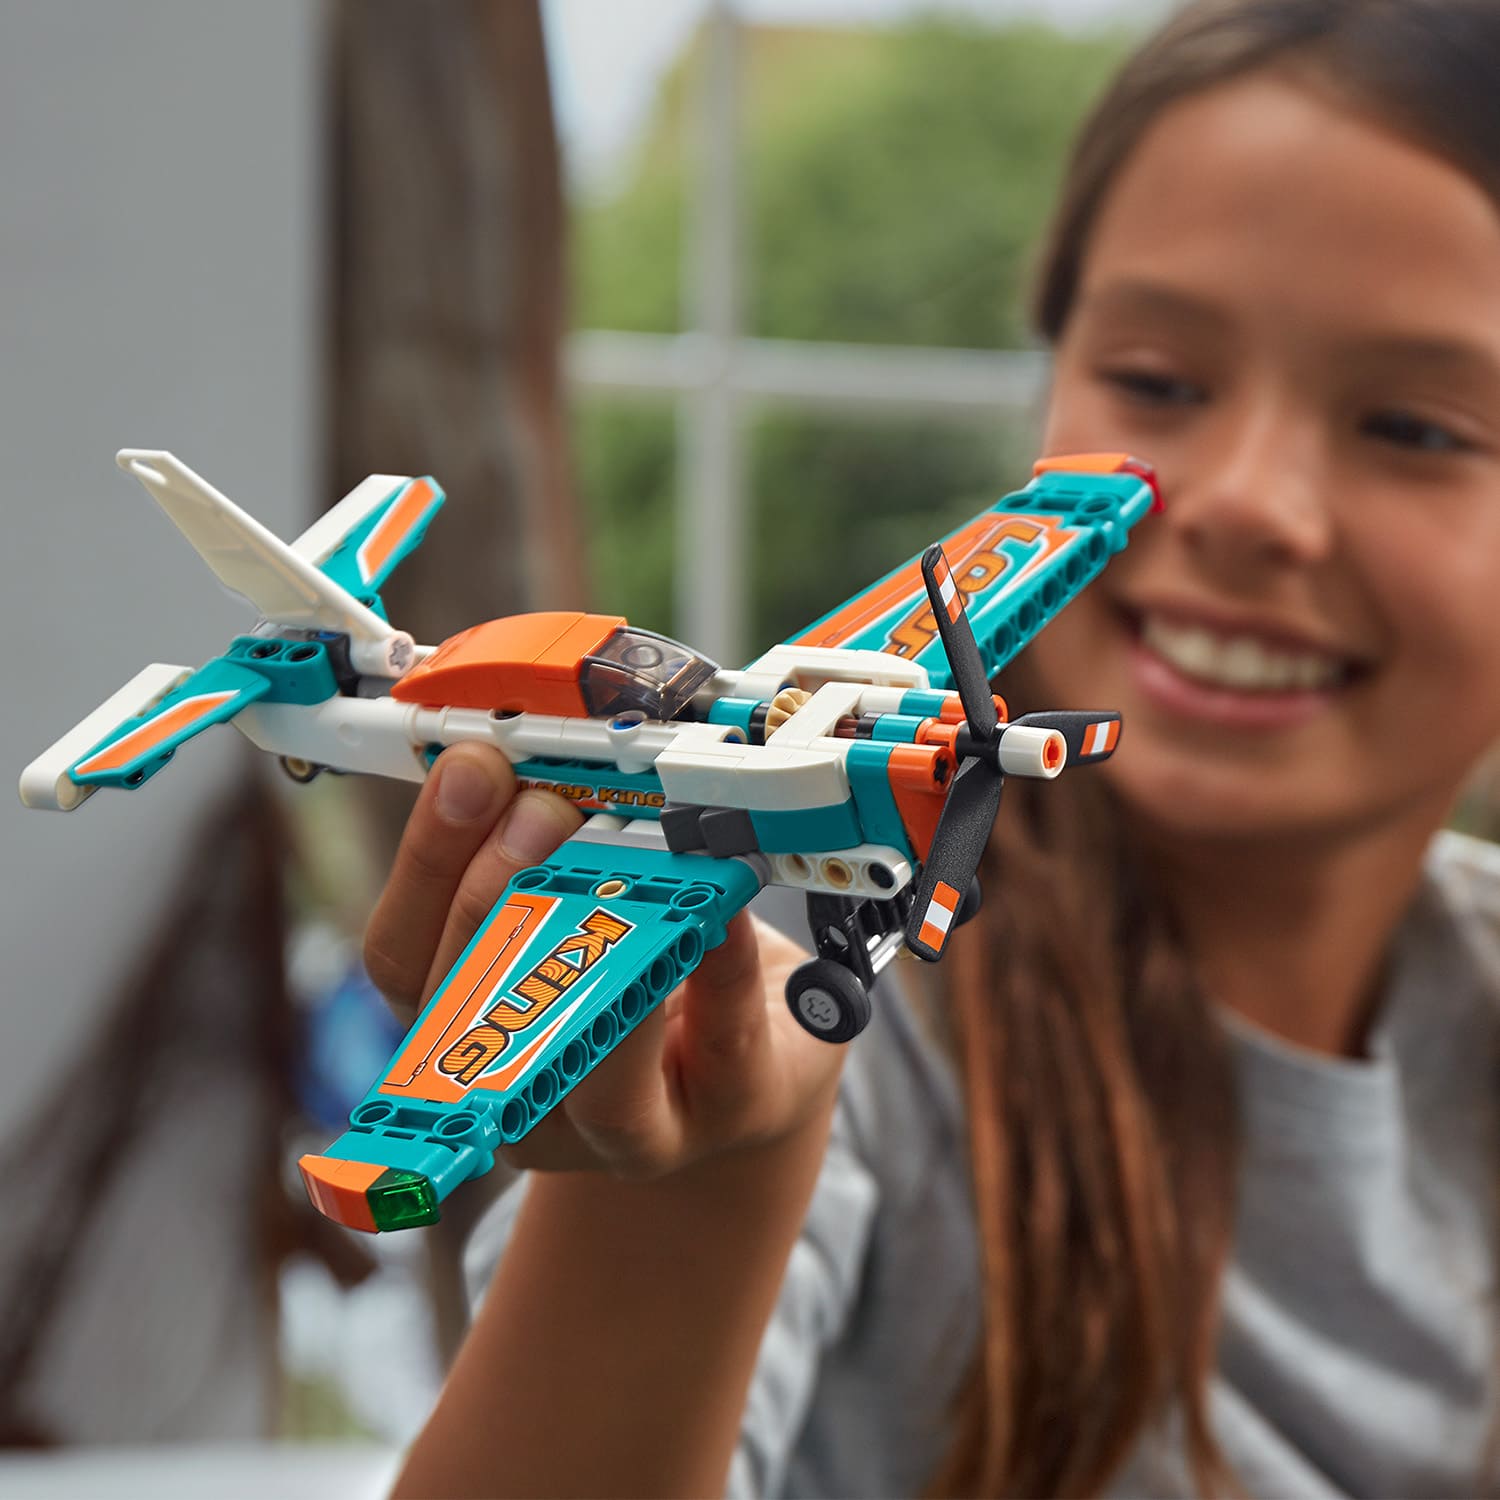 LEGO - Technic - Avion de course – L'atelier de Charlotte